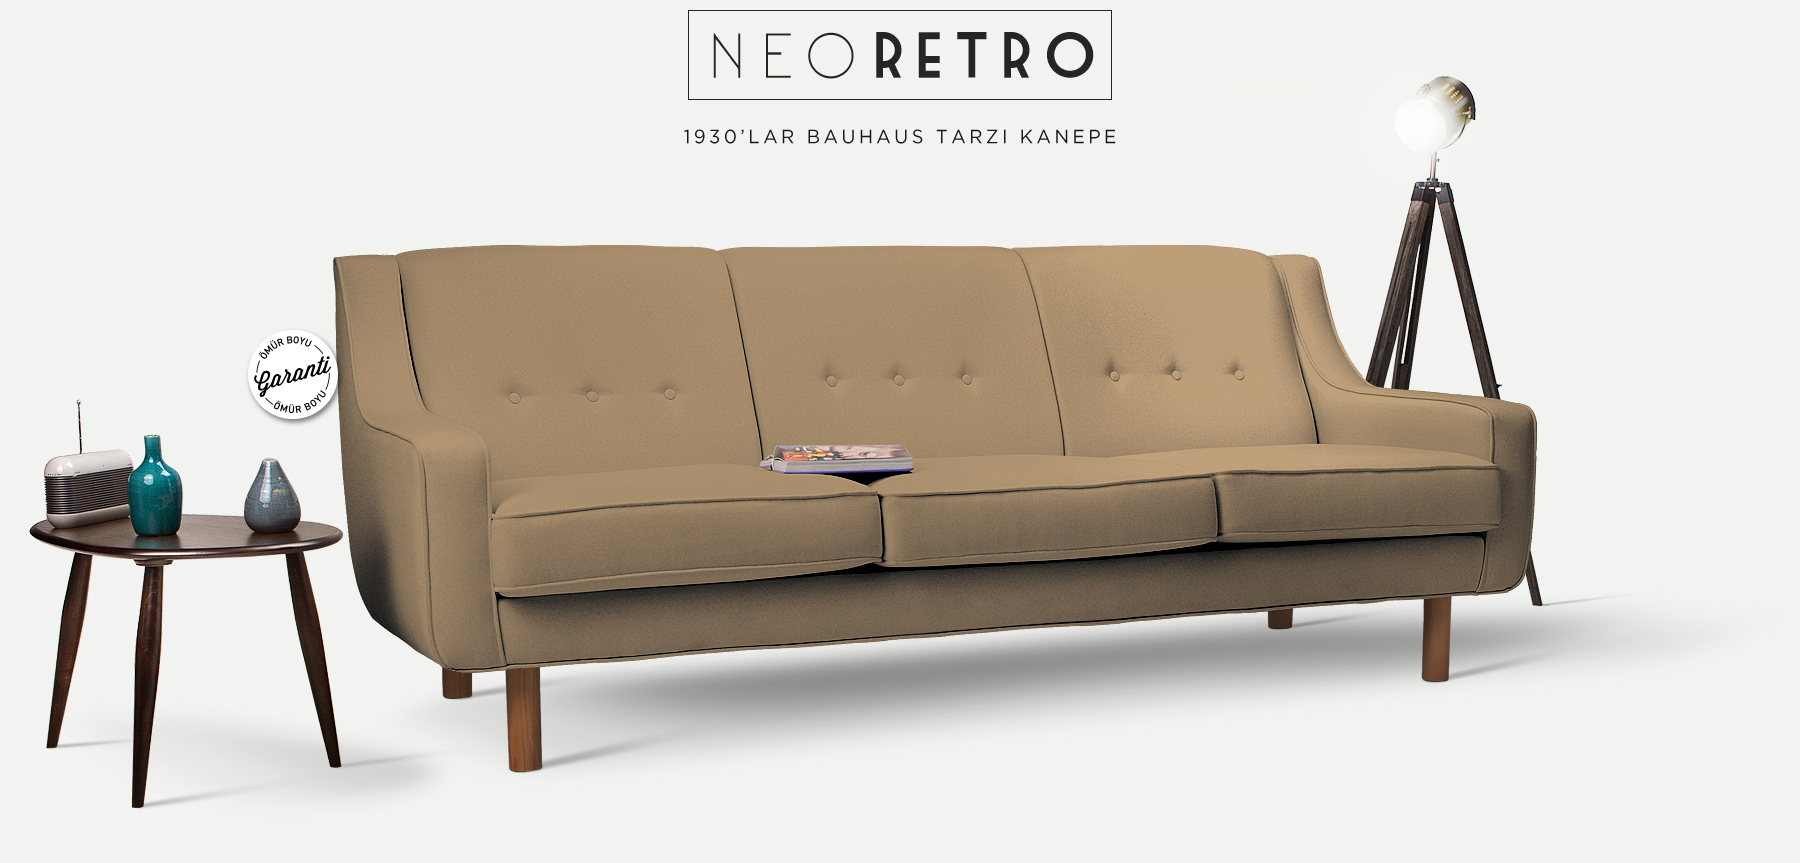 neoretro™ üçlü kum beji kanepe'in resmi